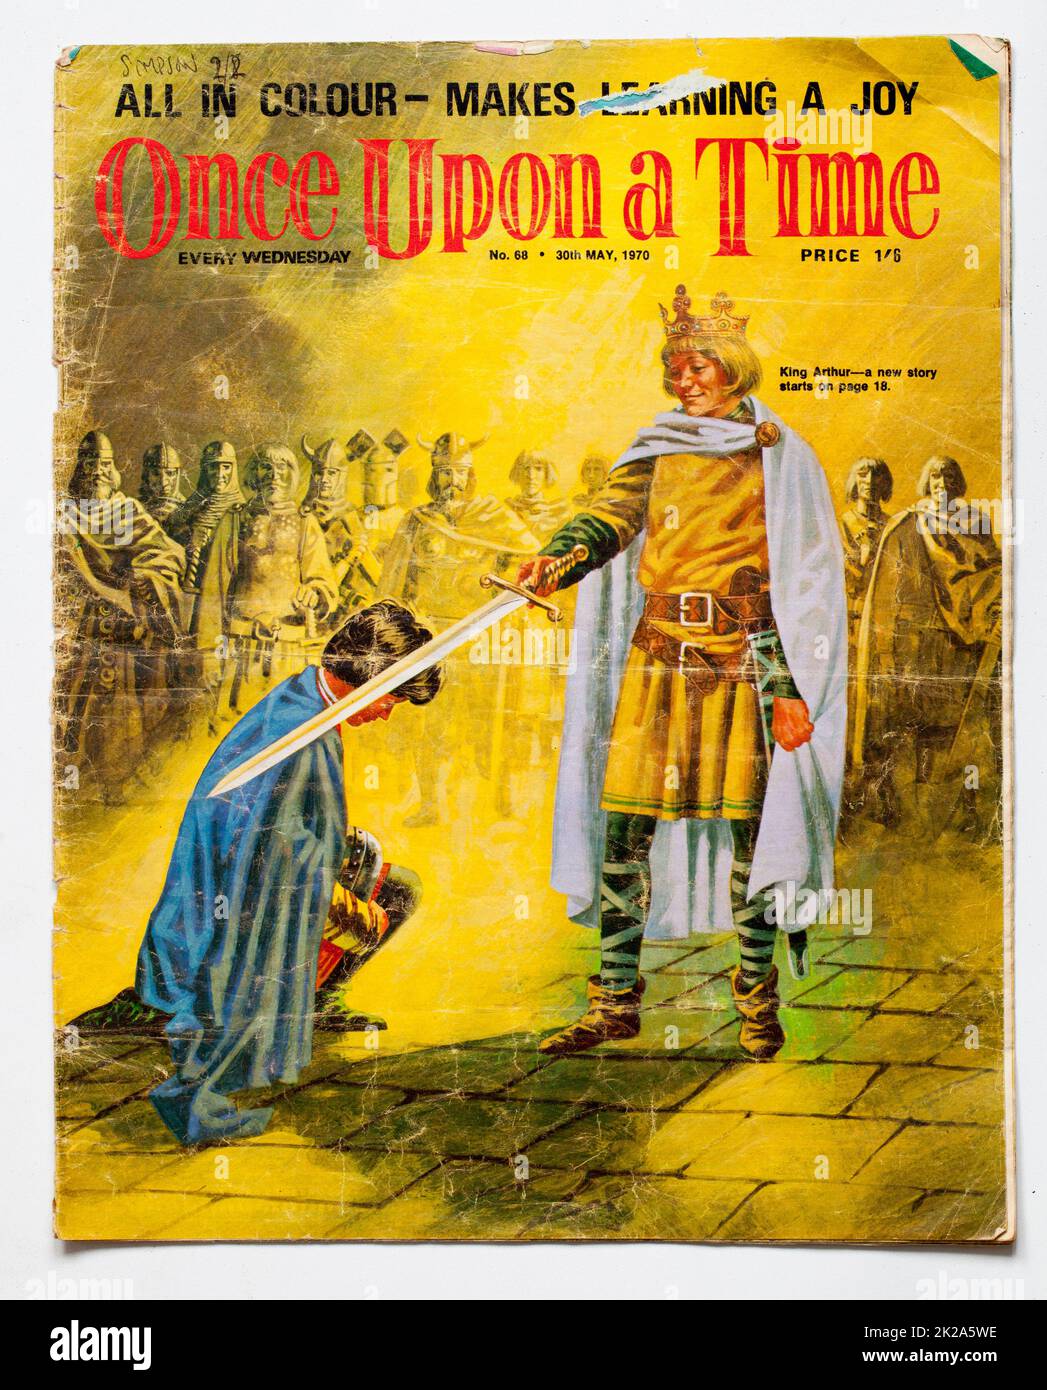 1970s Edición de Once Upon A Time Childrens Magazine Foto de stock